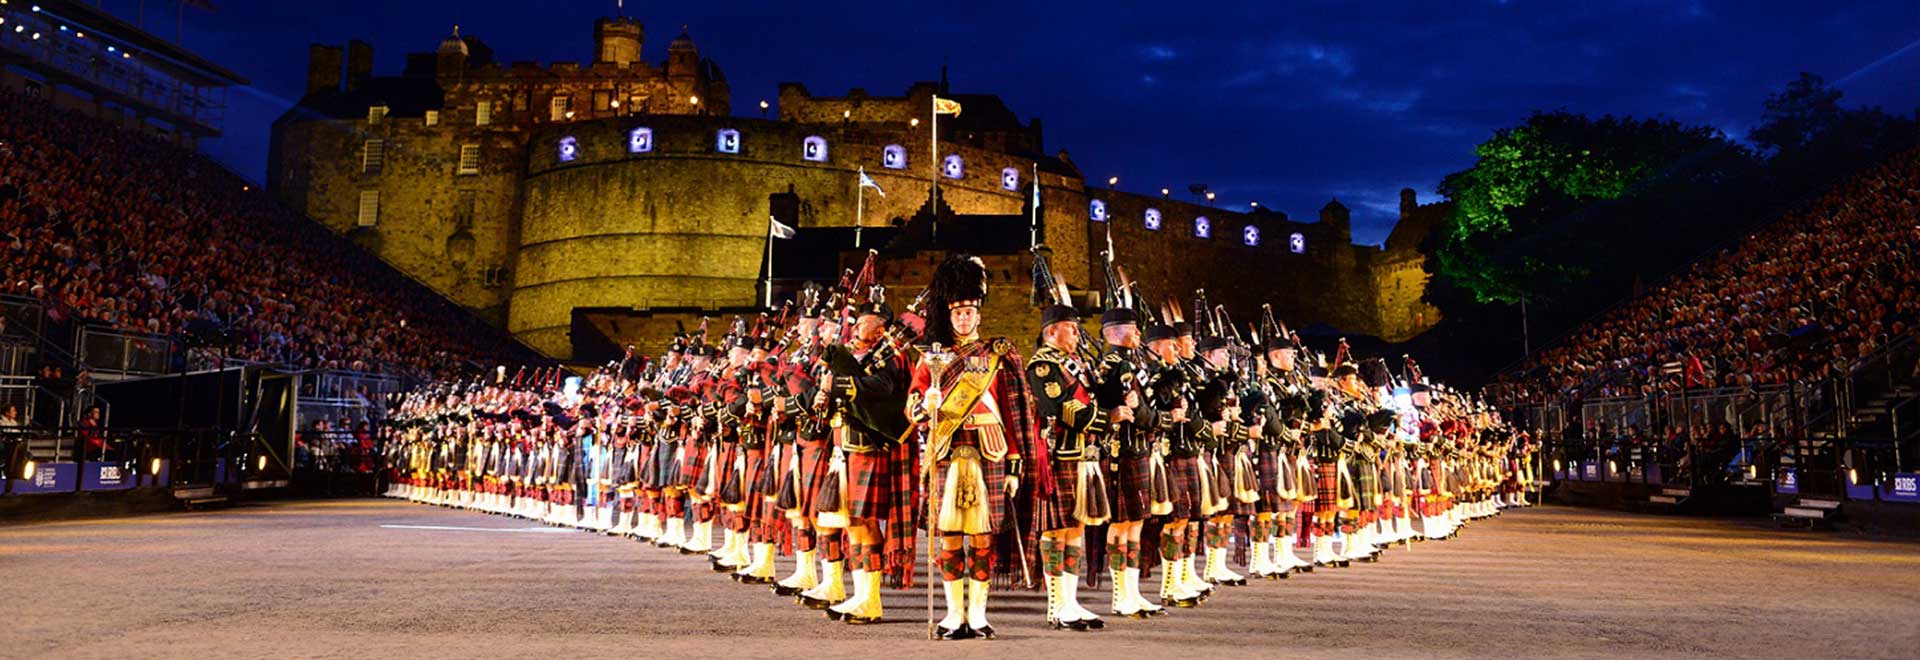 Lễ hội Royal Edinburgh Military Tattoo là một trong những sự kiện không thể bỏ qua khi đến Scotland. Với những màn biểu diễn ấn tượng, độc đáo và ấn tượng, các đơn vị quân sự từ khắp nơi trên thế giới đã mang đến cho du khách một trải nghiệm khó quên. Đánh giá của khách hàng cho thấy đây là một lễ hội đáng để tới tham dự.